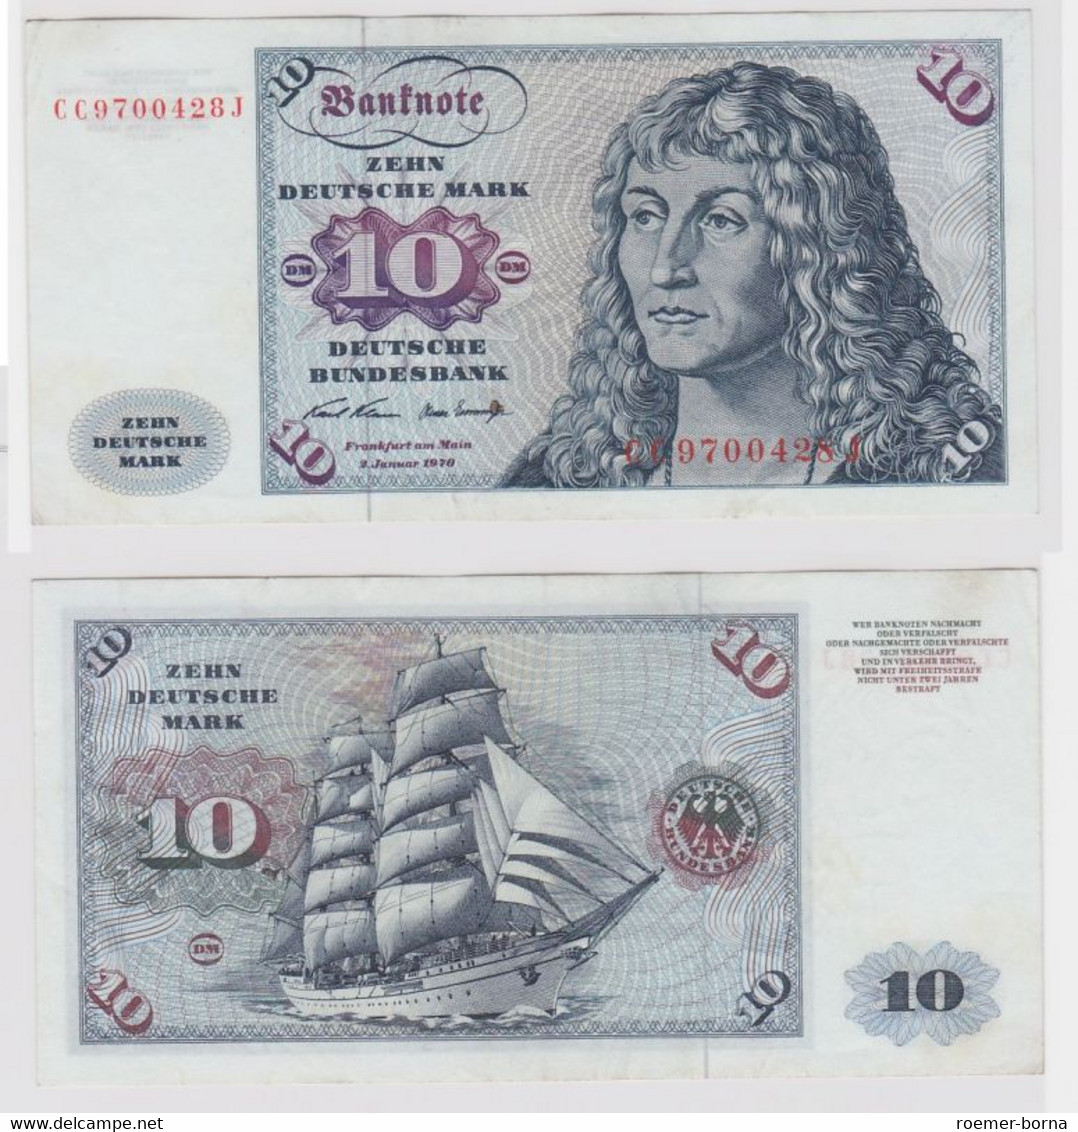 T146337 Banknote 10 DM Deutsche Mark Ro. 270a Schein 2.Jan. 1970 KN CC 9700428 J - 10 Deutsche Mark